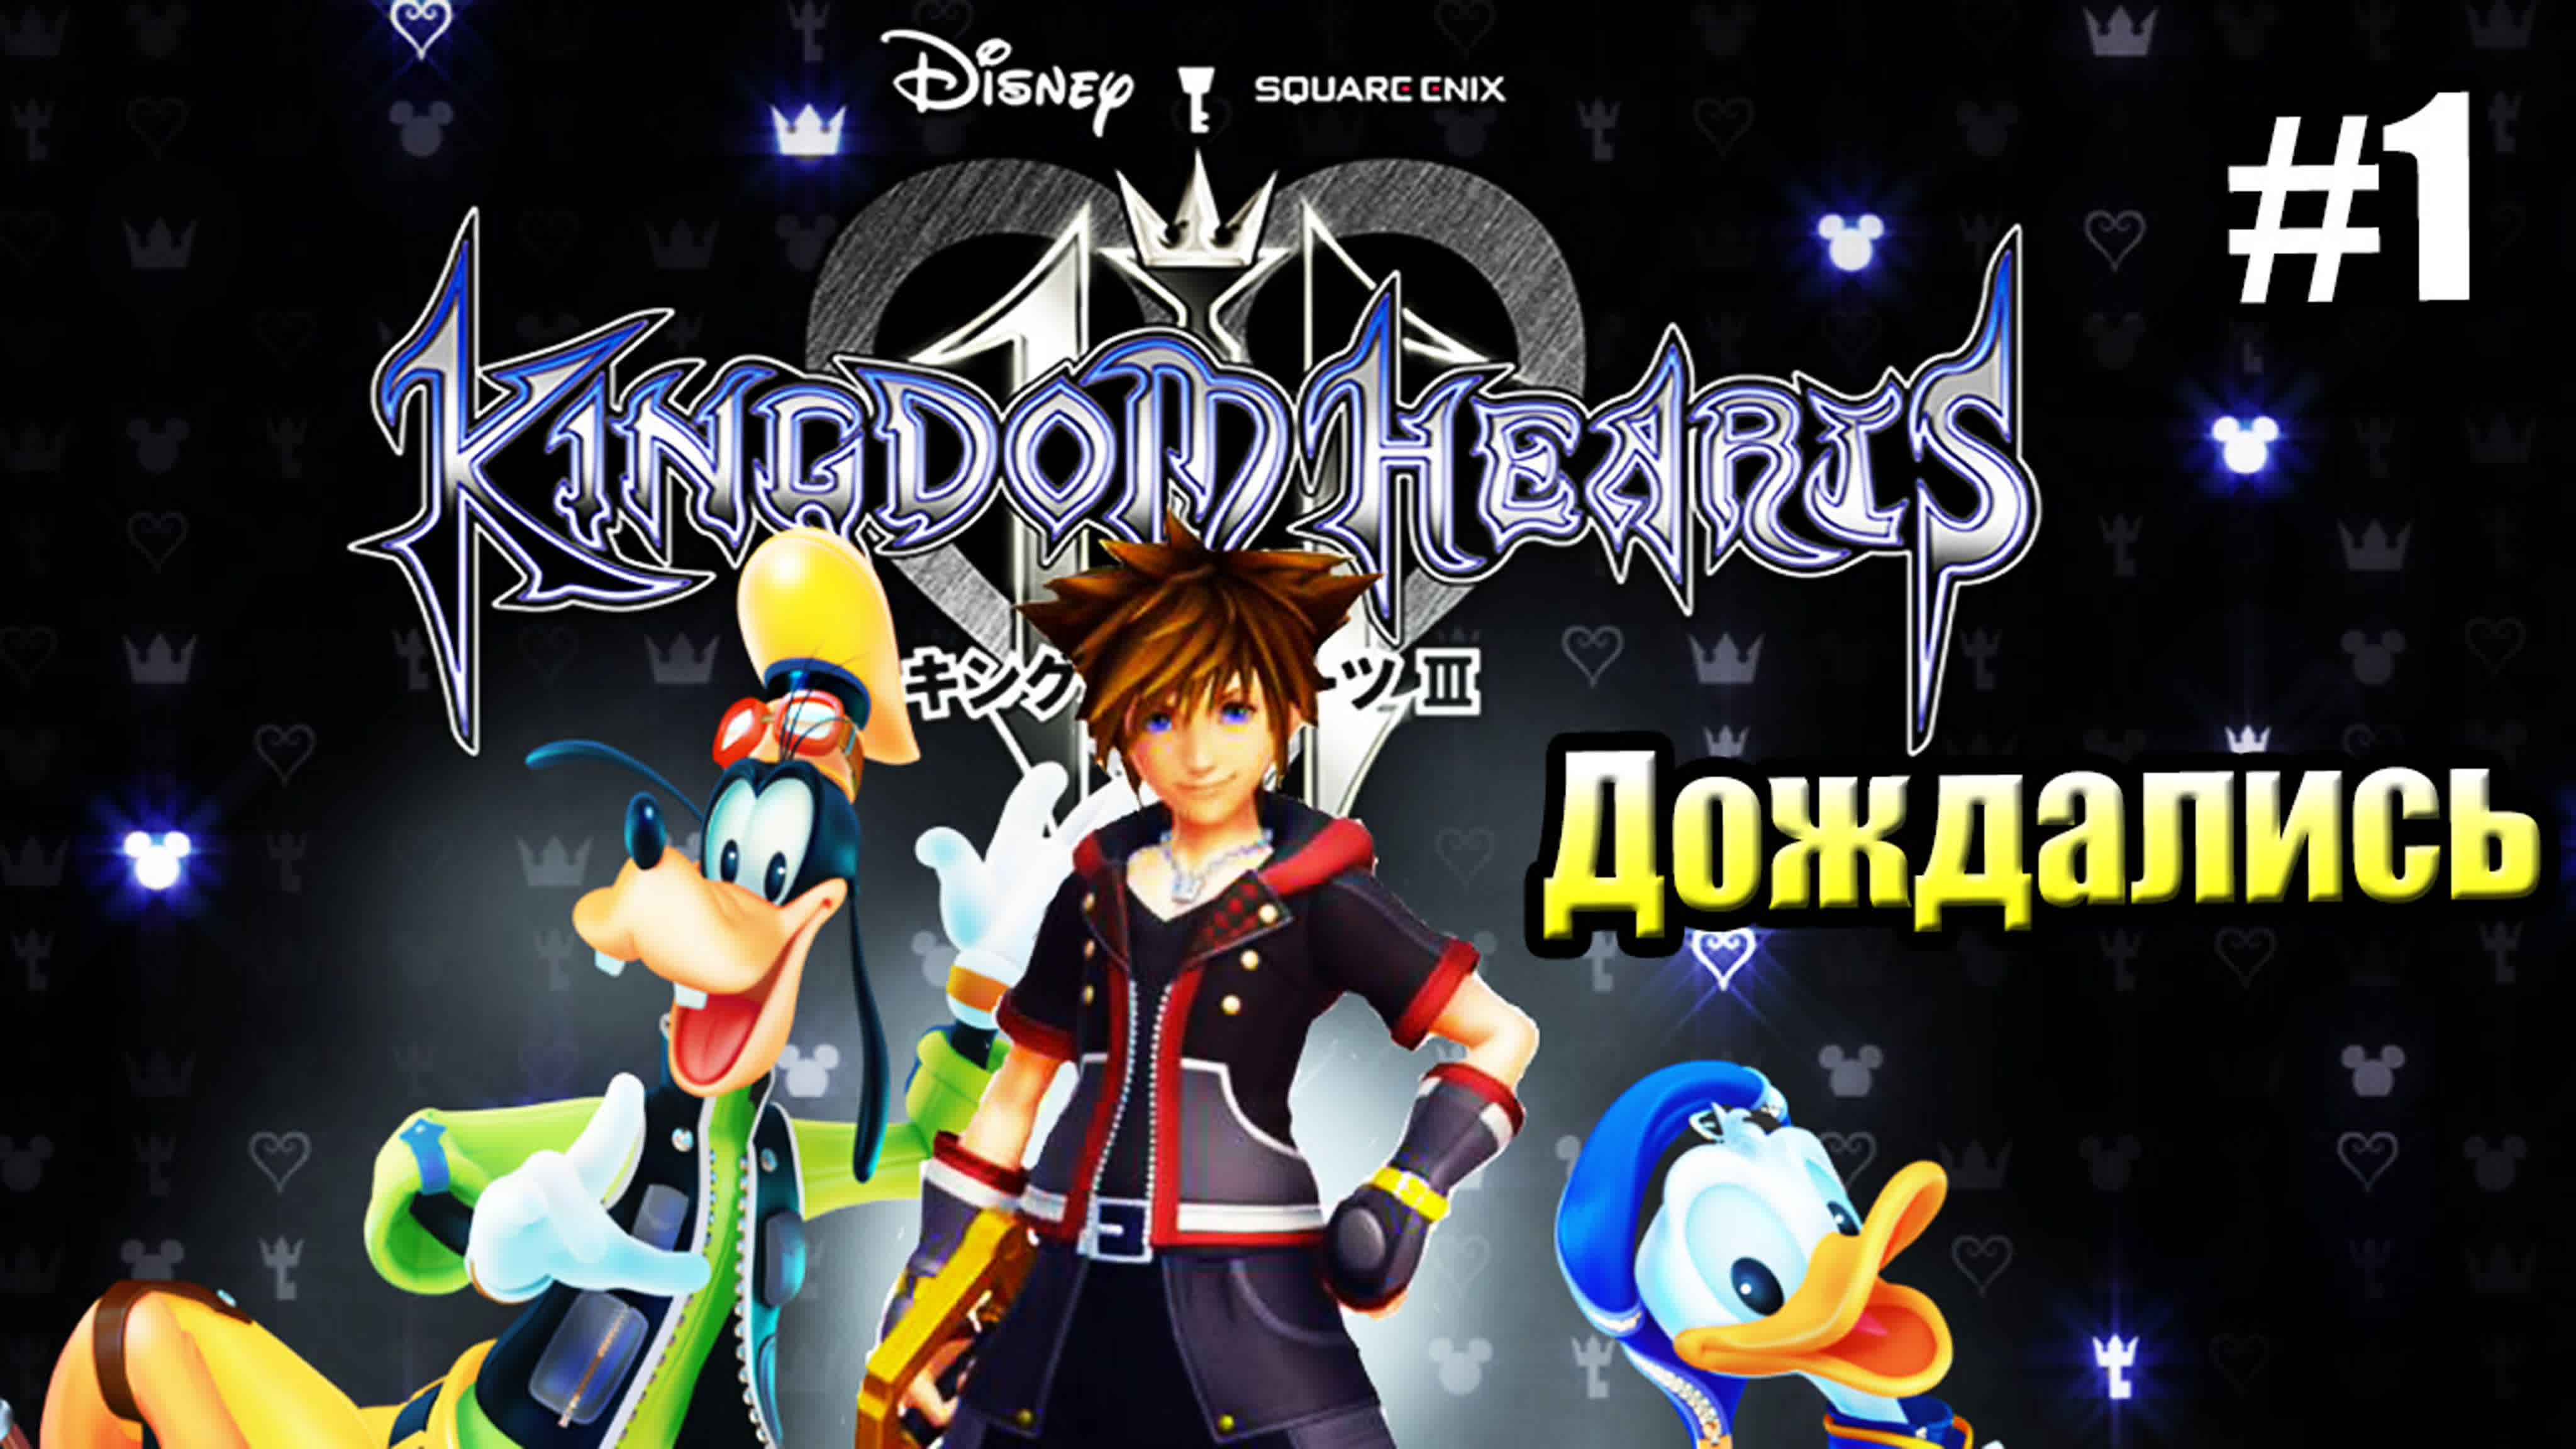 Kingdom Hearts 3 (PS4)